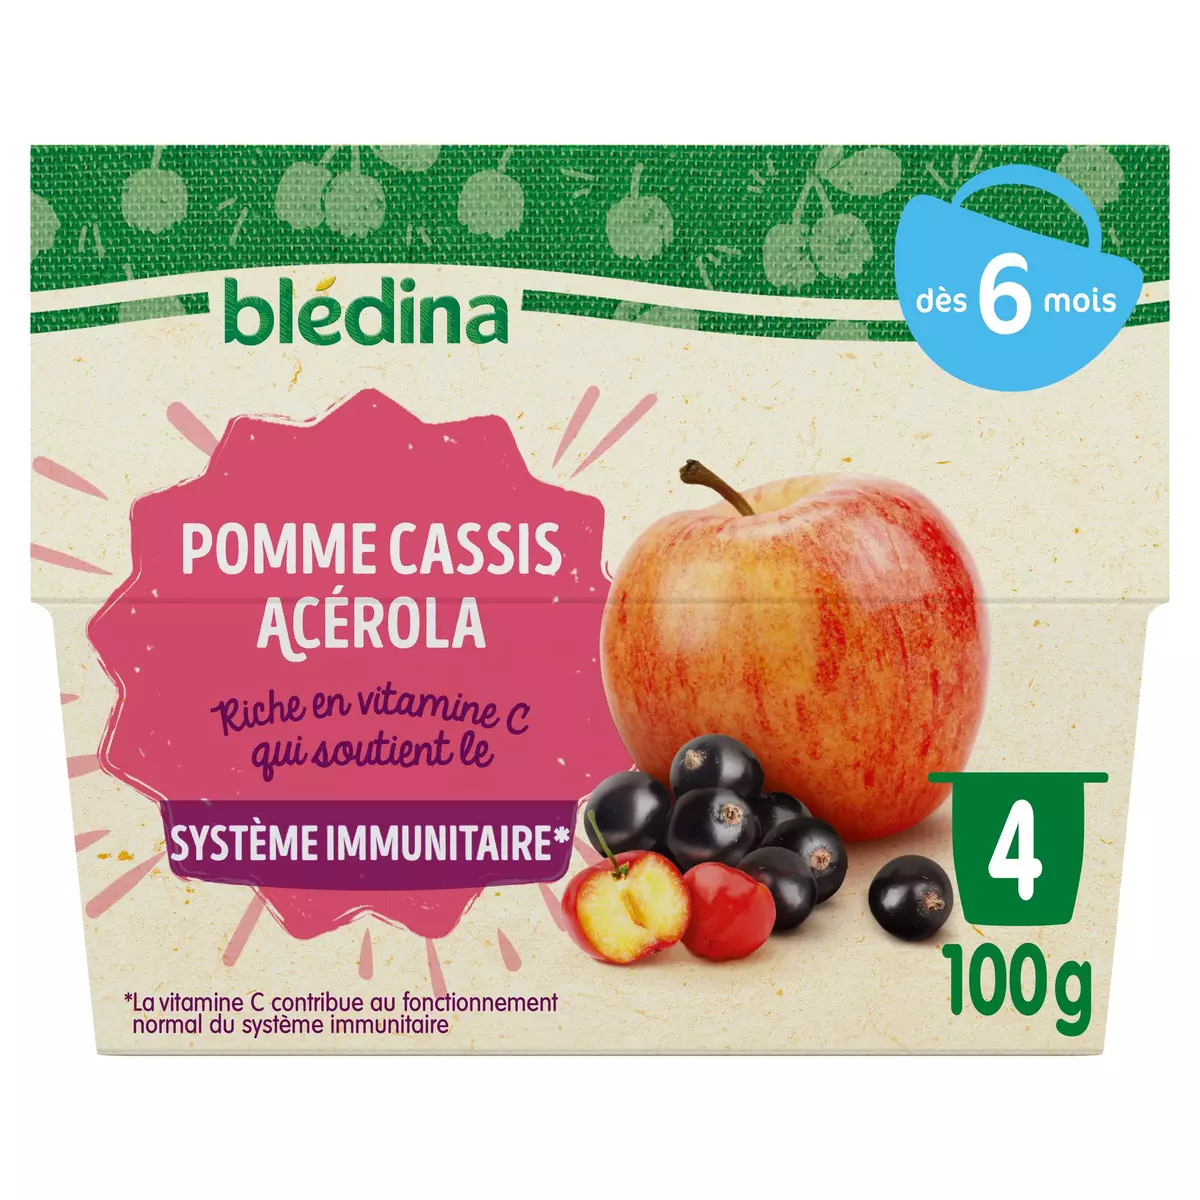 BLEDINA Petit pot dessert pomme cassis acérola dès 6 mois 4x100g